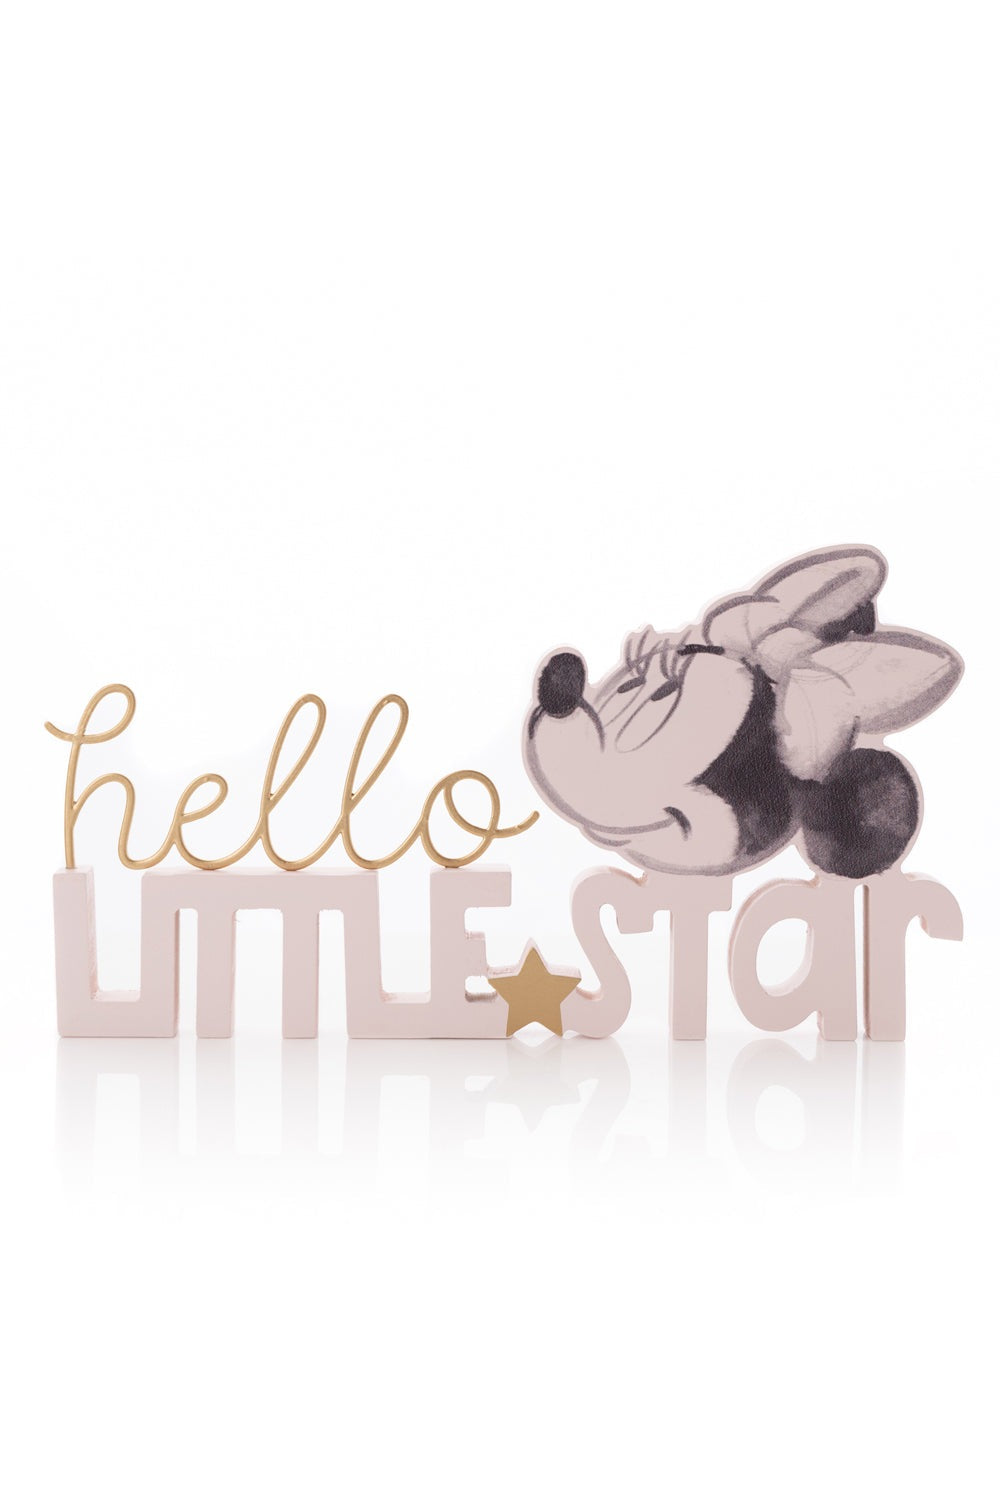 Disney Disney Minnie Hello Little Star Mantel Plaque Pink 1 Shaws Department Stores